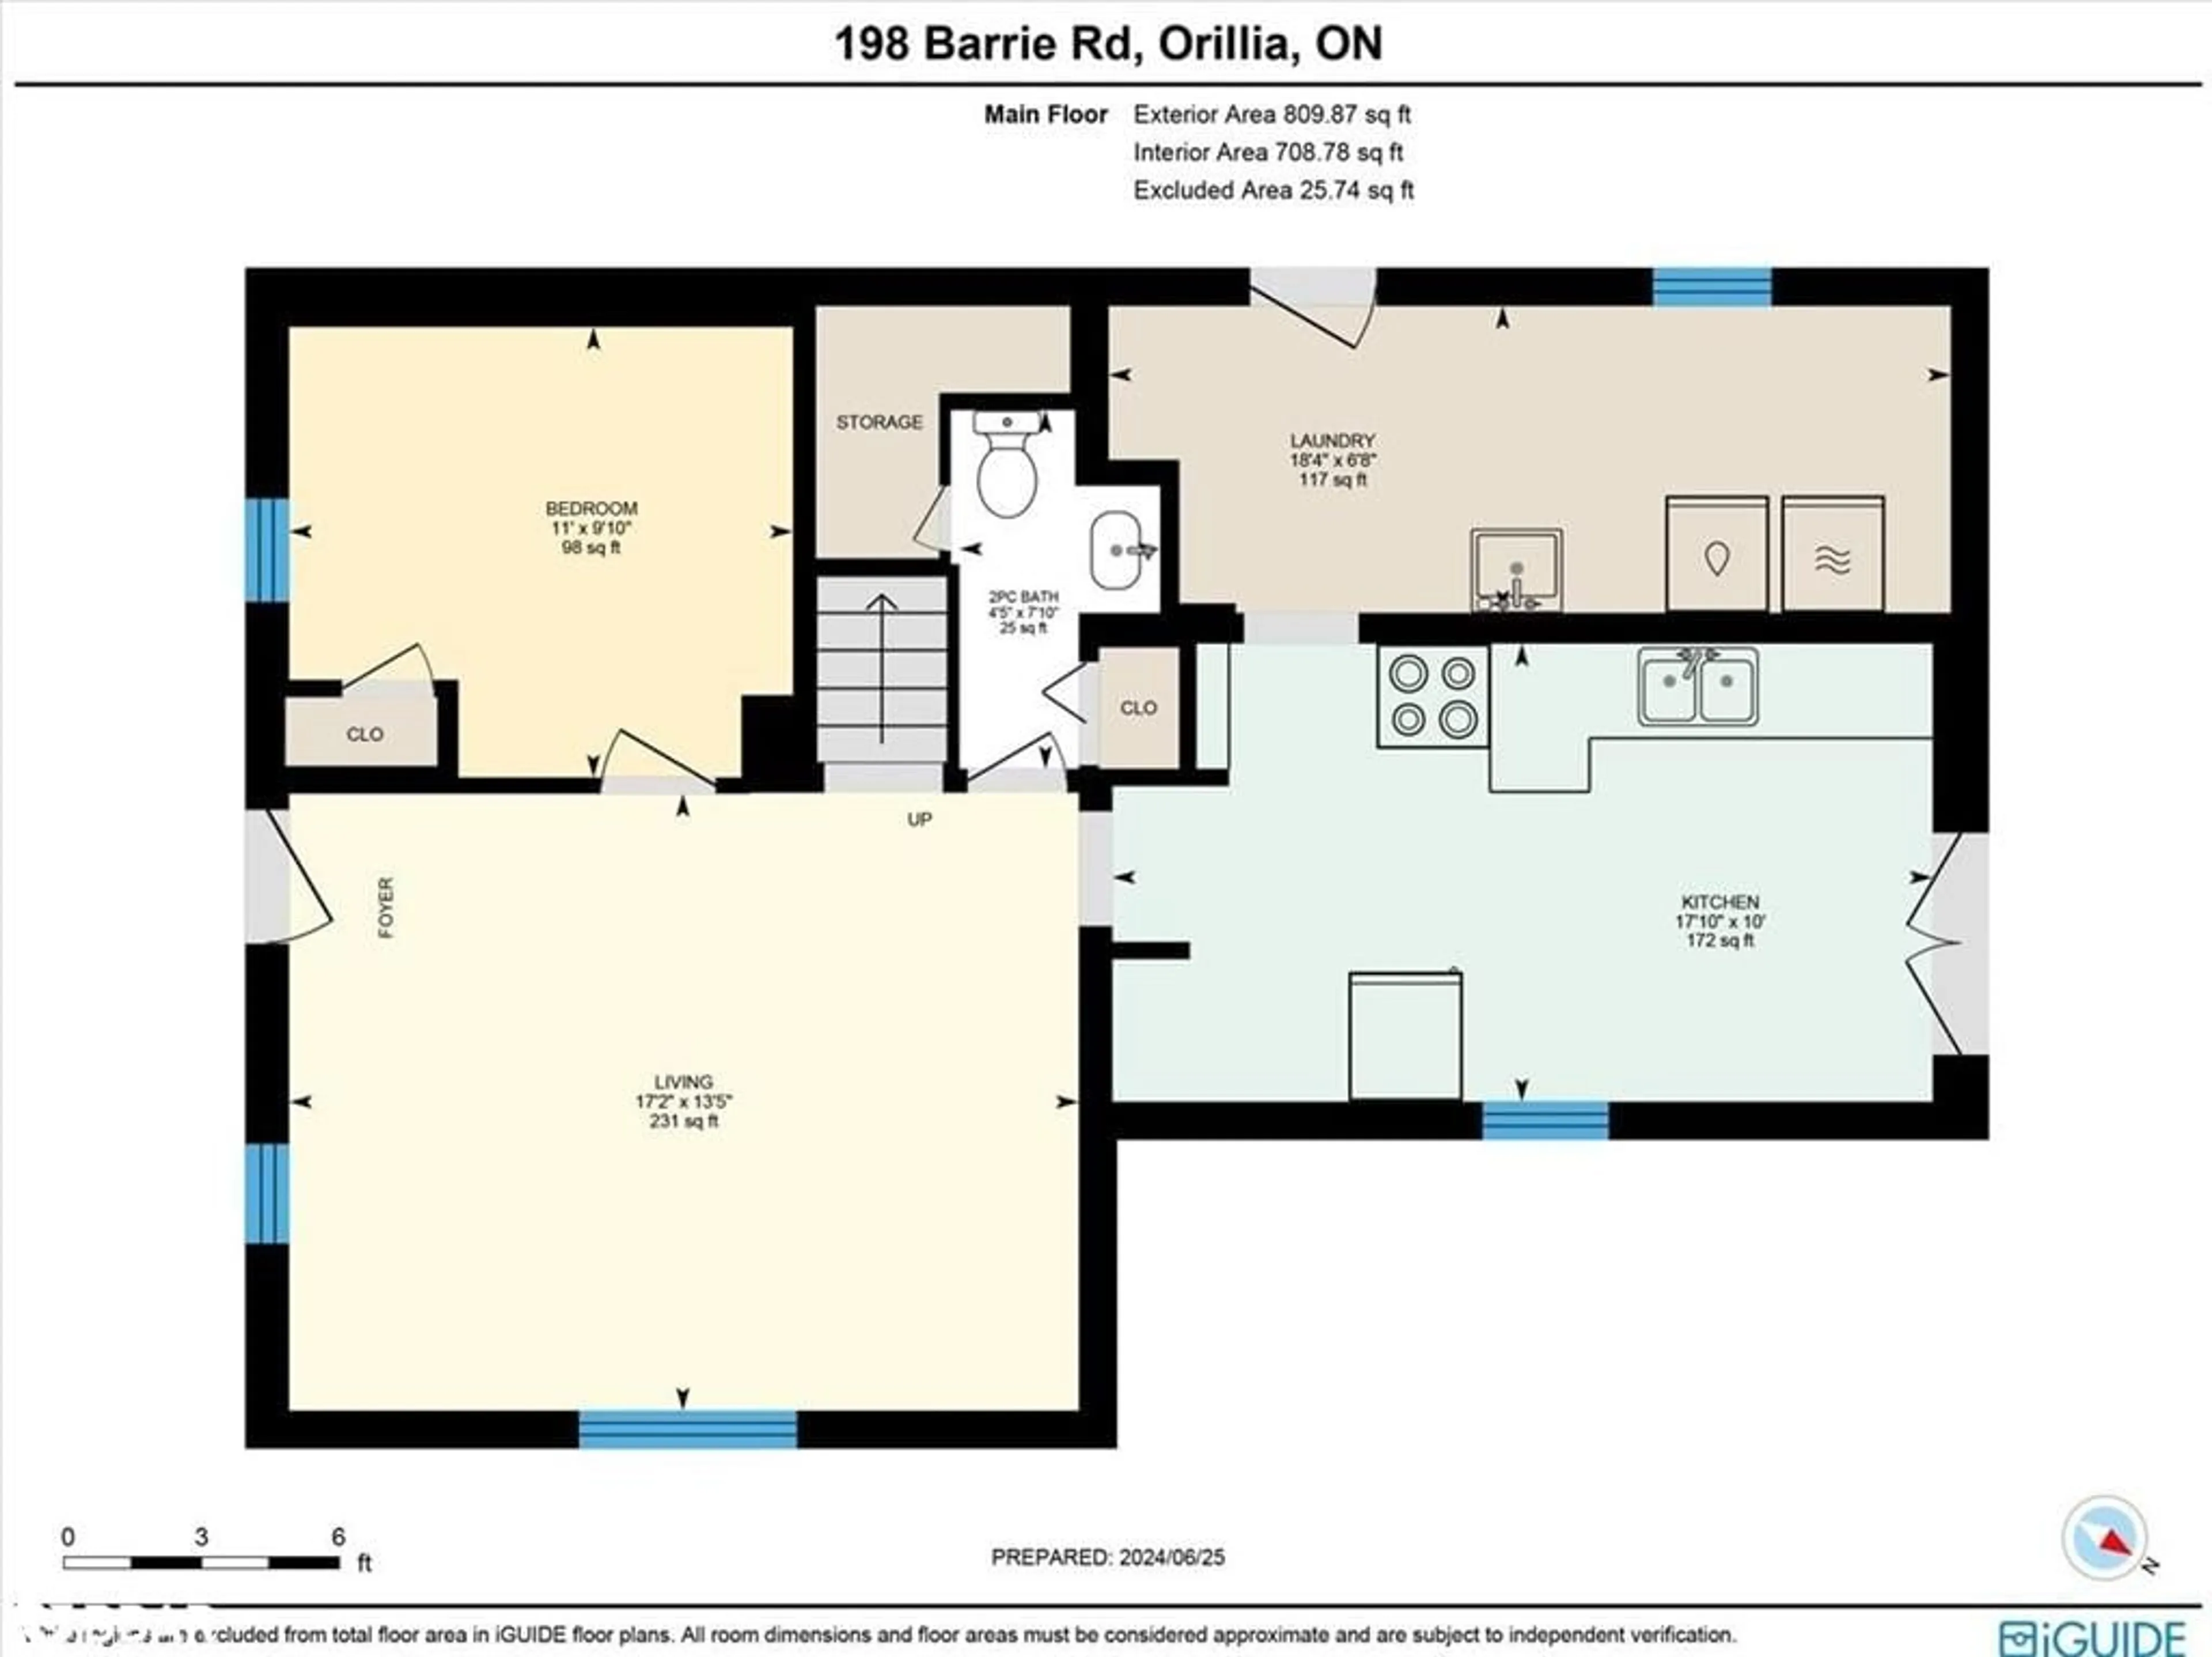 Floor plan for 198 Barrie Rd, Orillia Ontario L3V 2R3